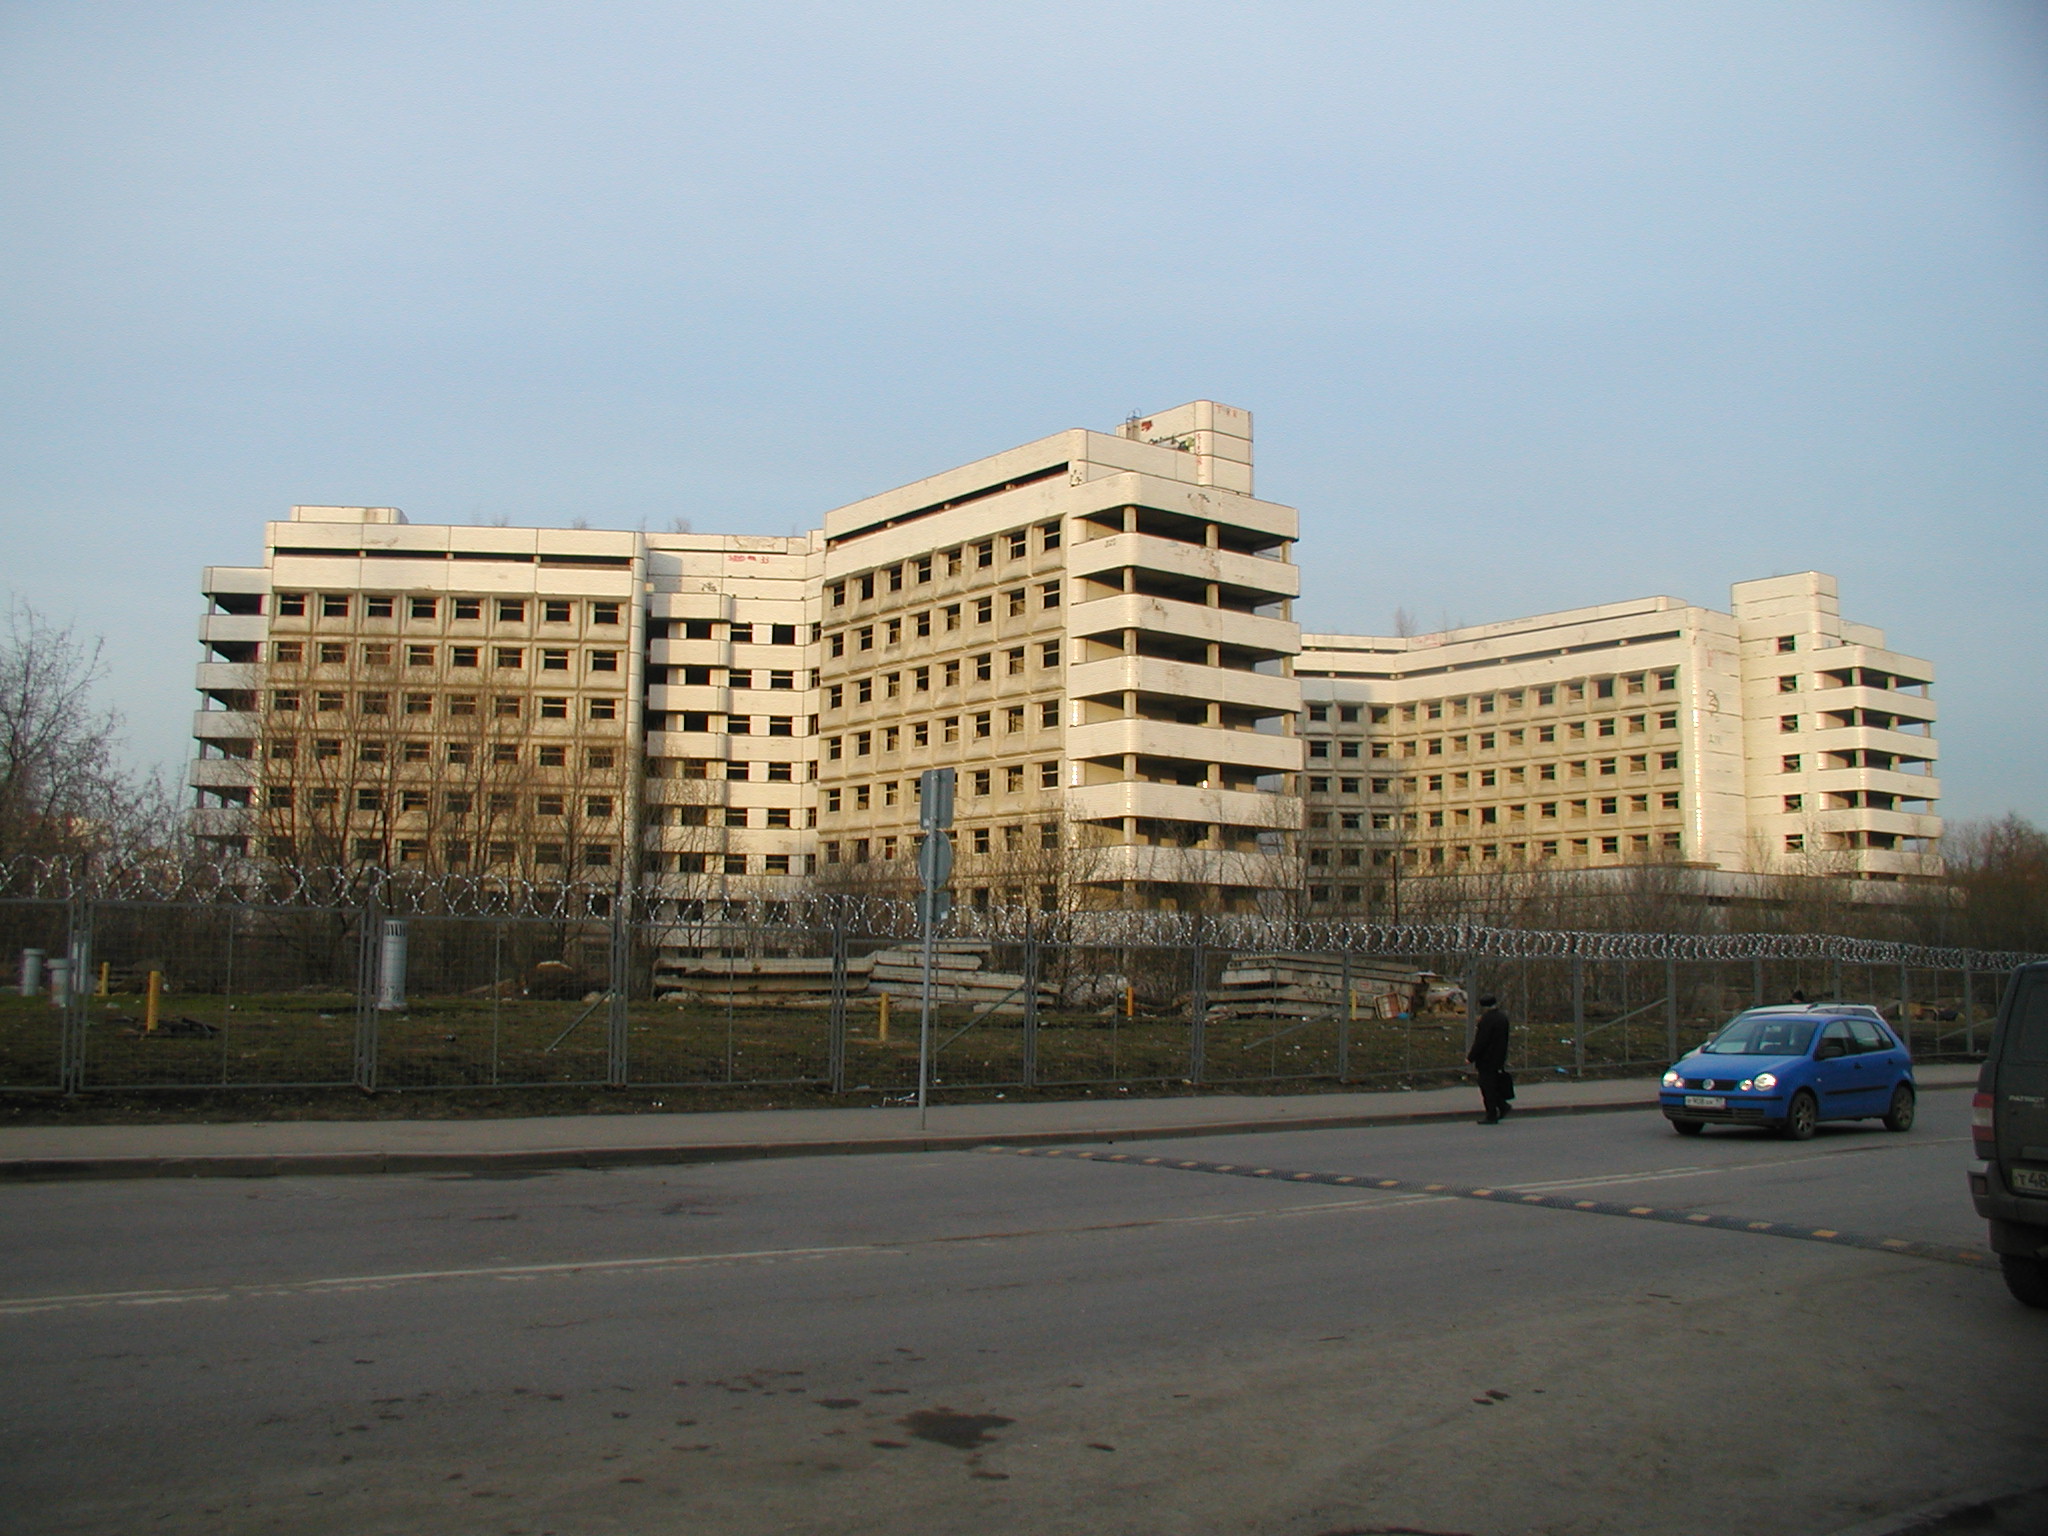 The Maternity Hospital